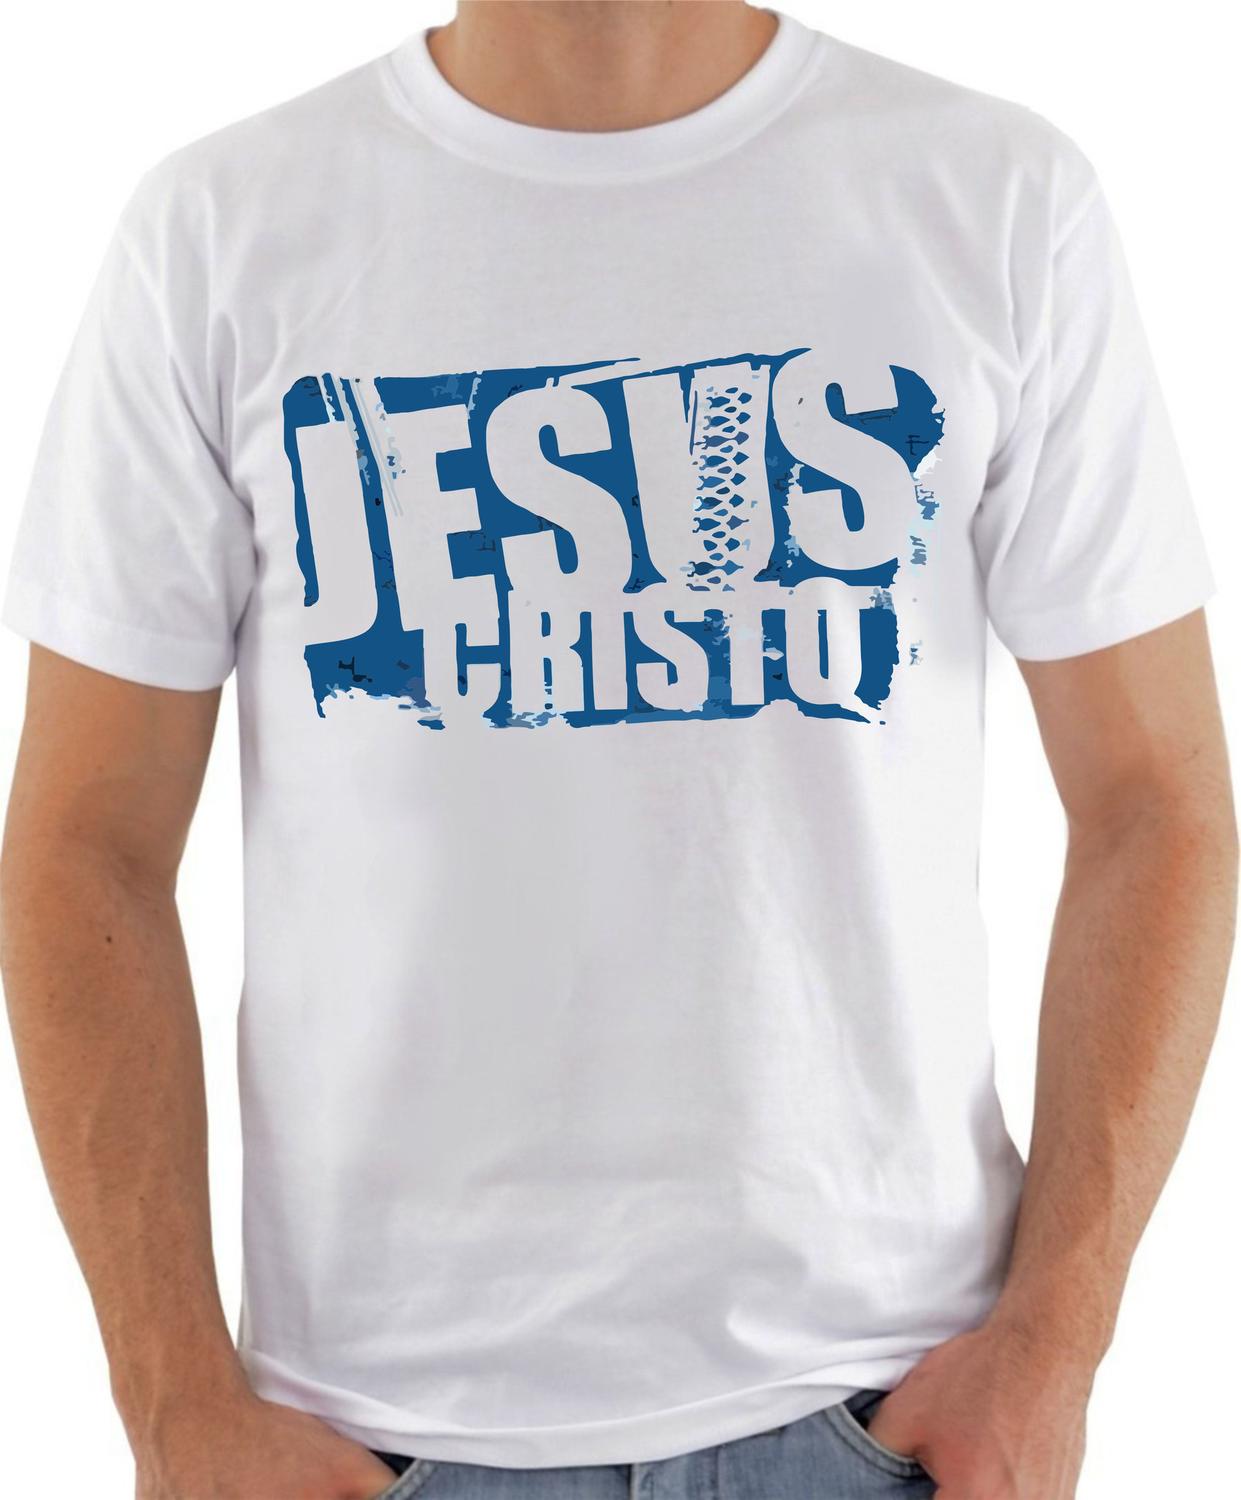 camisa moda evangélica